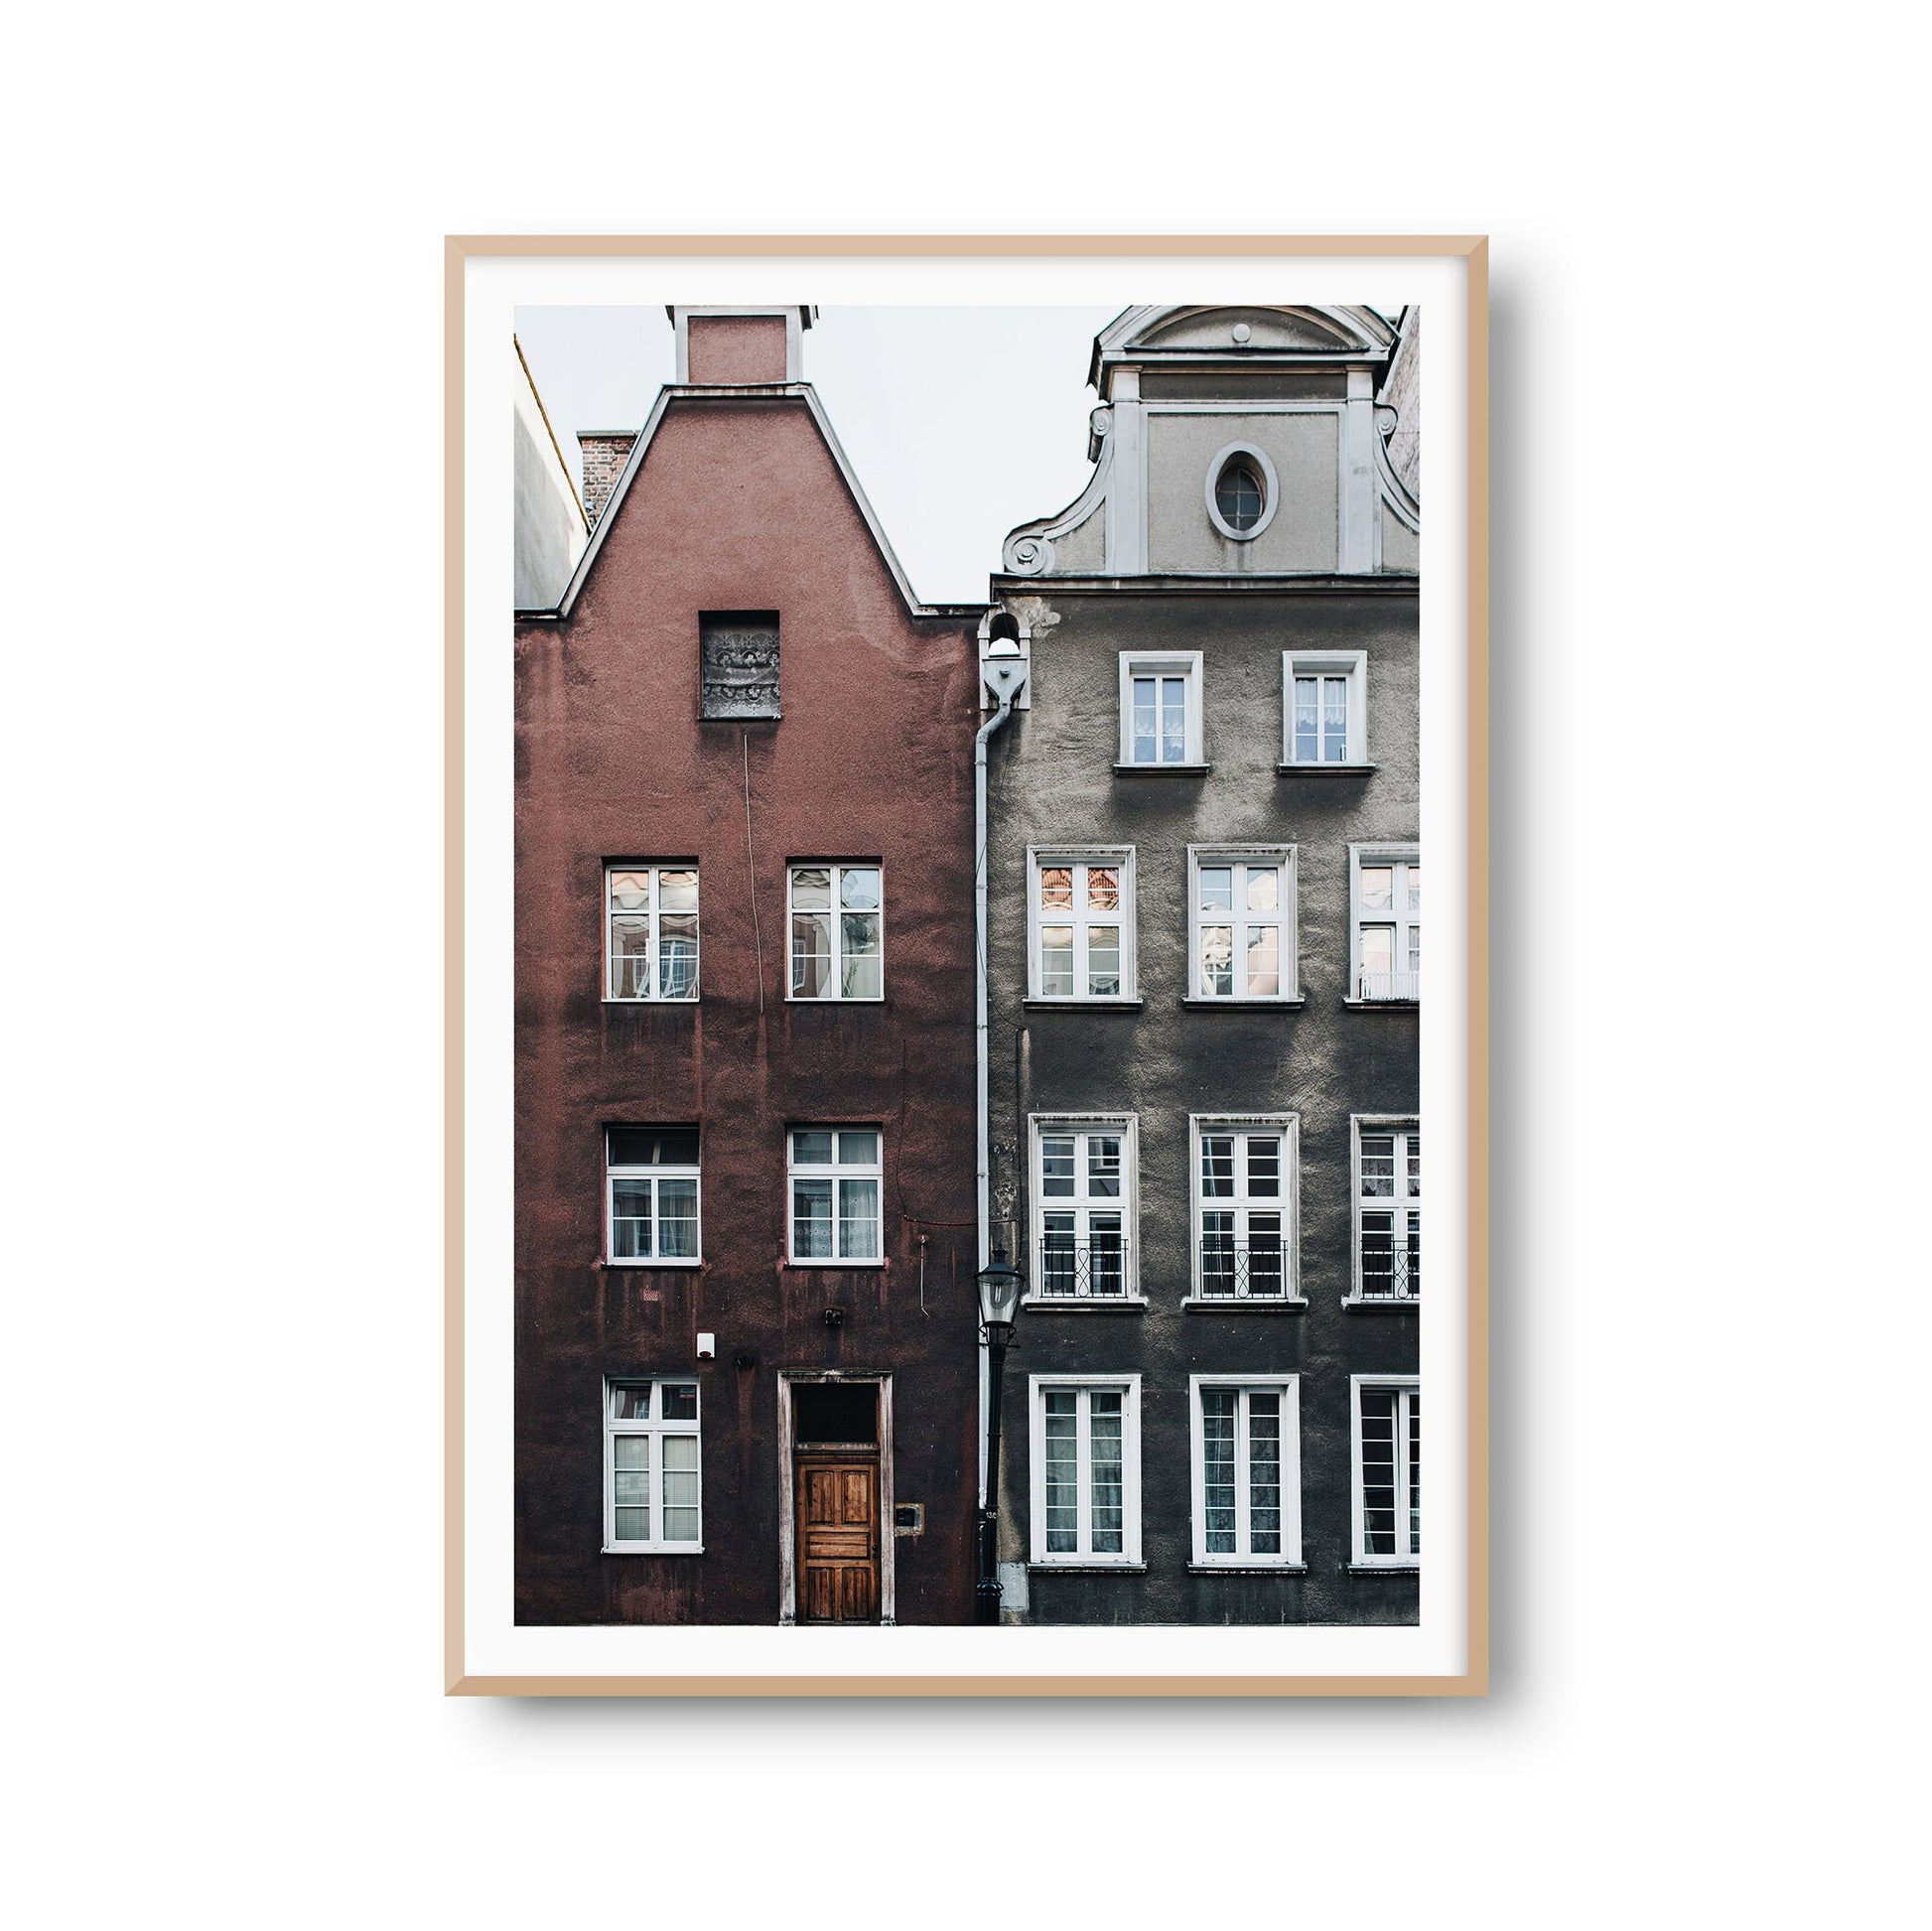 Wanddeko Poster "Schmale Häuser" Häuserfront Fotoprint Kunstdruck Bild Fotografie Print Wandbild Kunstdruck (OHNE RAHMEN)